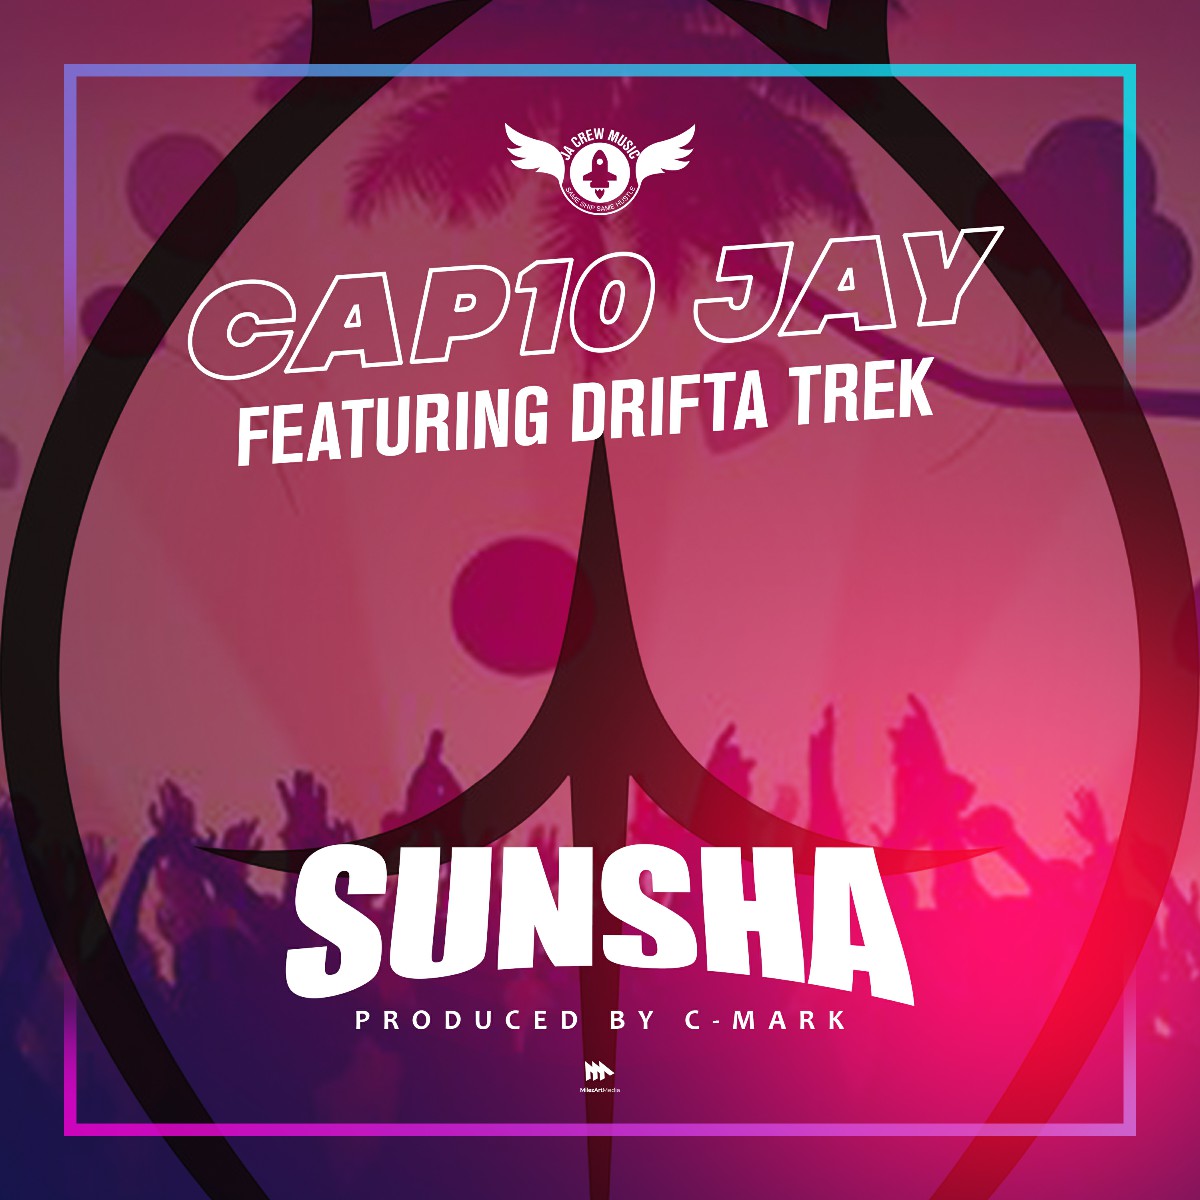 Cap10 Jay ft. Drifta Trek - Sunsha